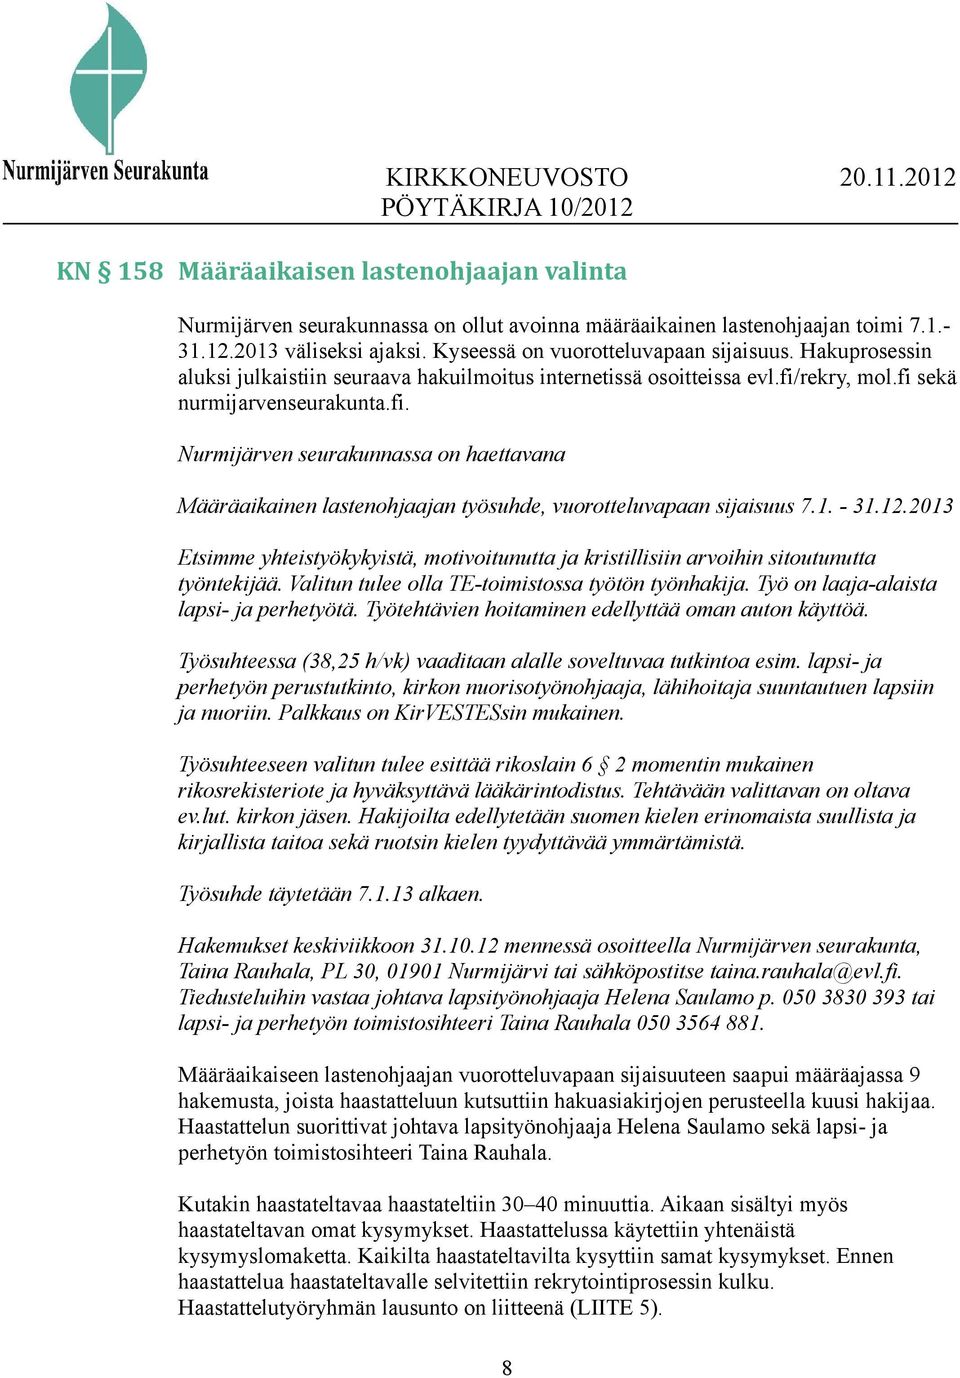 rekry, mol.fi sekä nurmijarvenseurakunta.fi. Nurmijärven seurakunnassa on haettavana Määräaikainen lastenohjaajan työsuhde, vuorotteluvapaan sijaisuus 7.1. - 31.12.